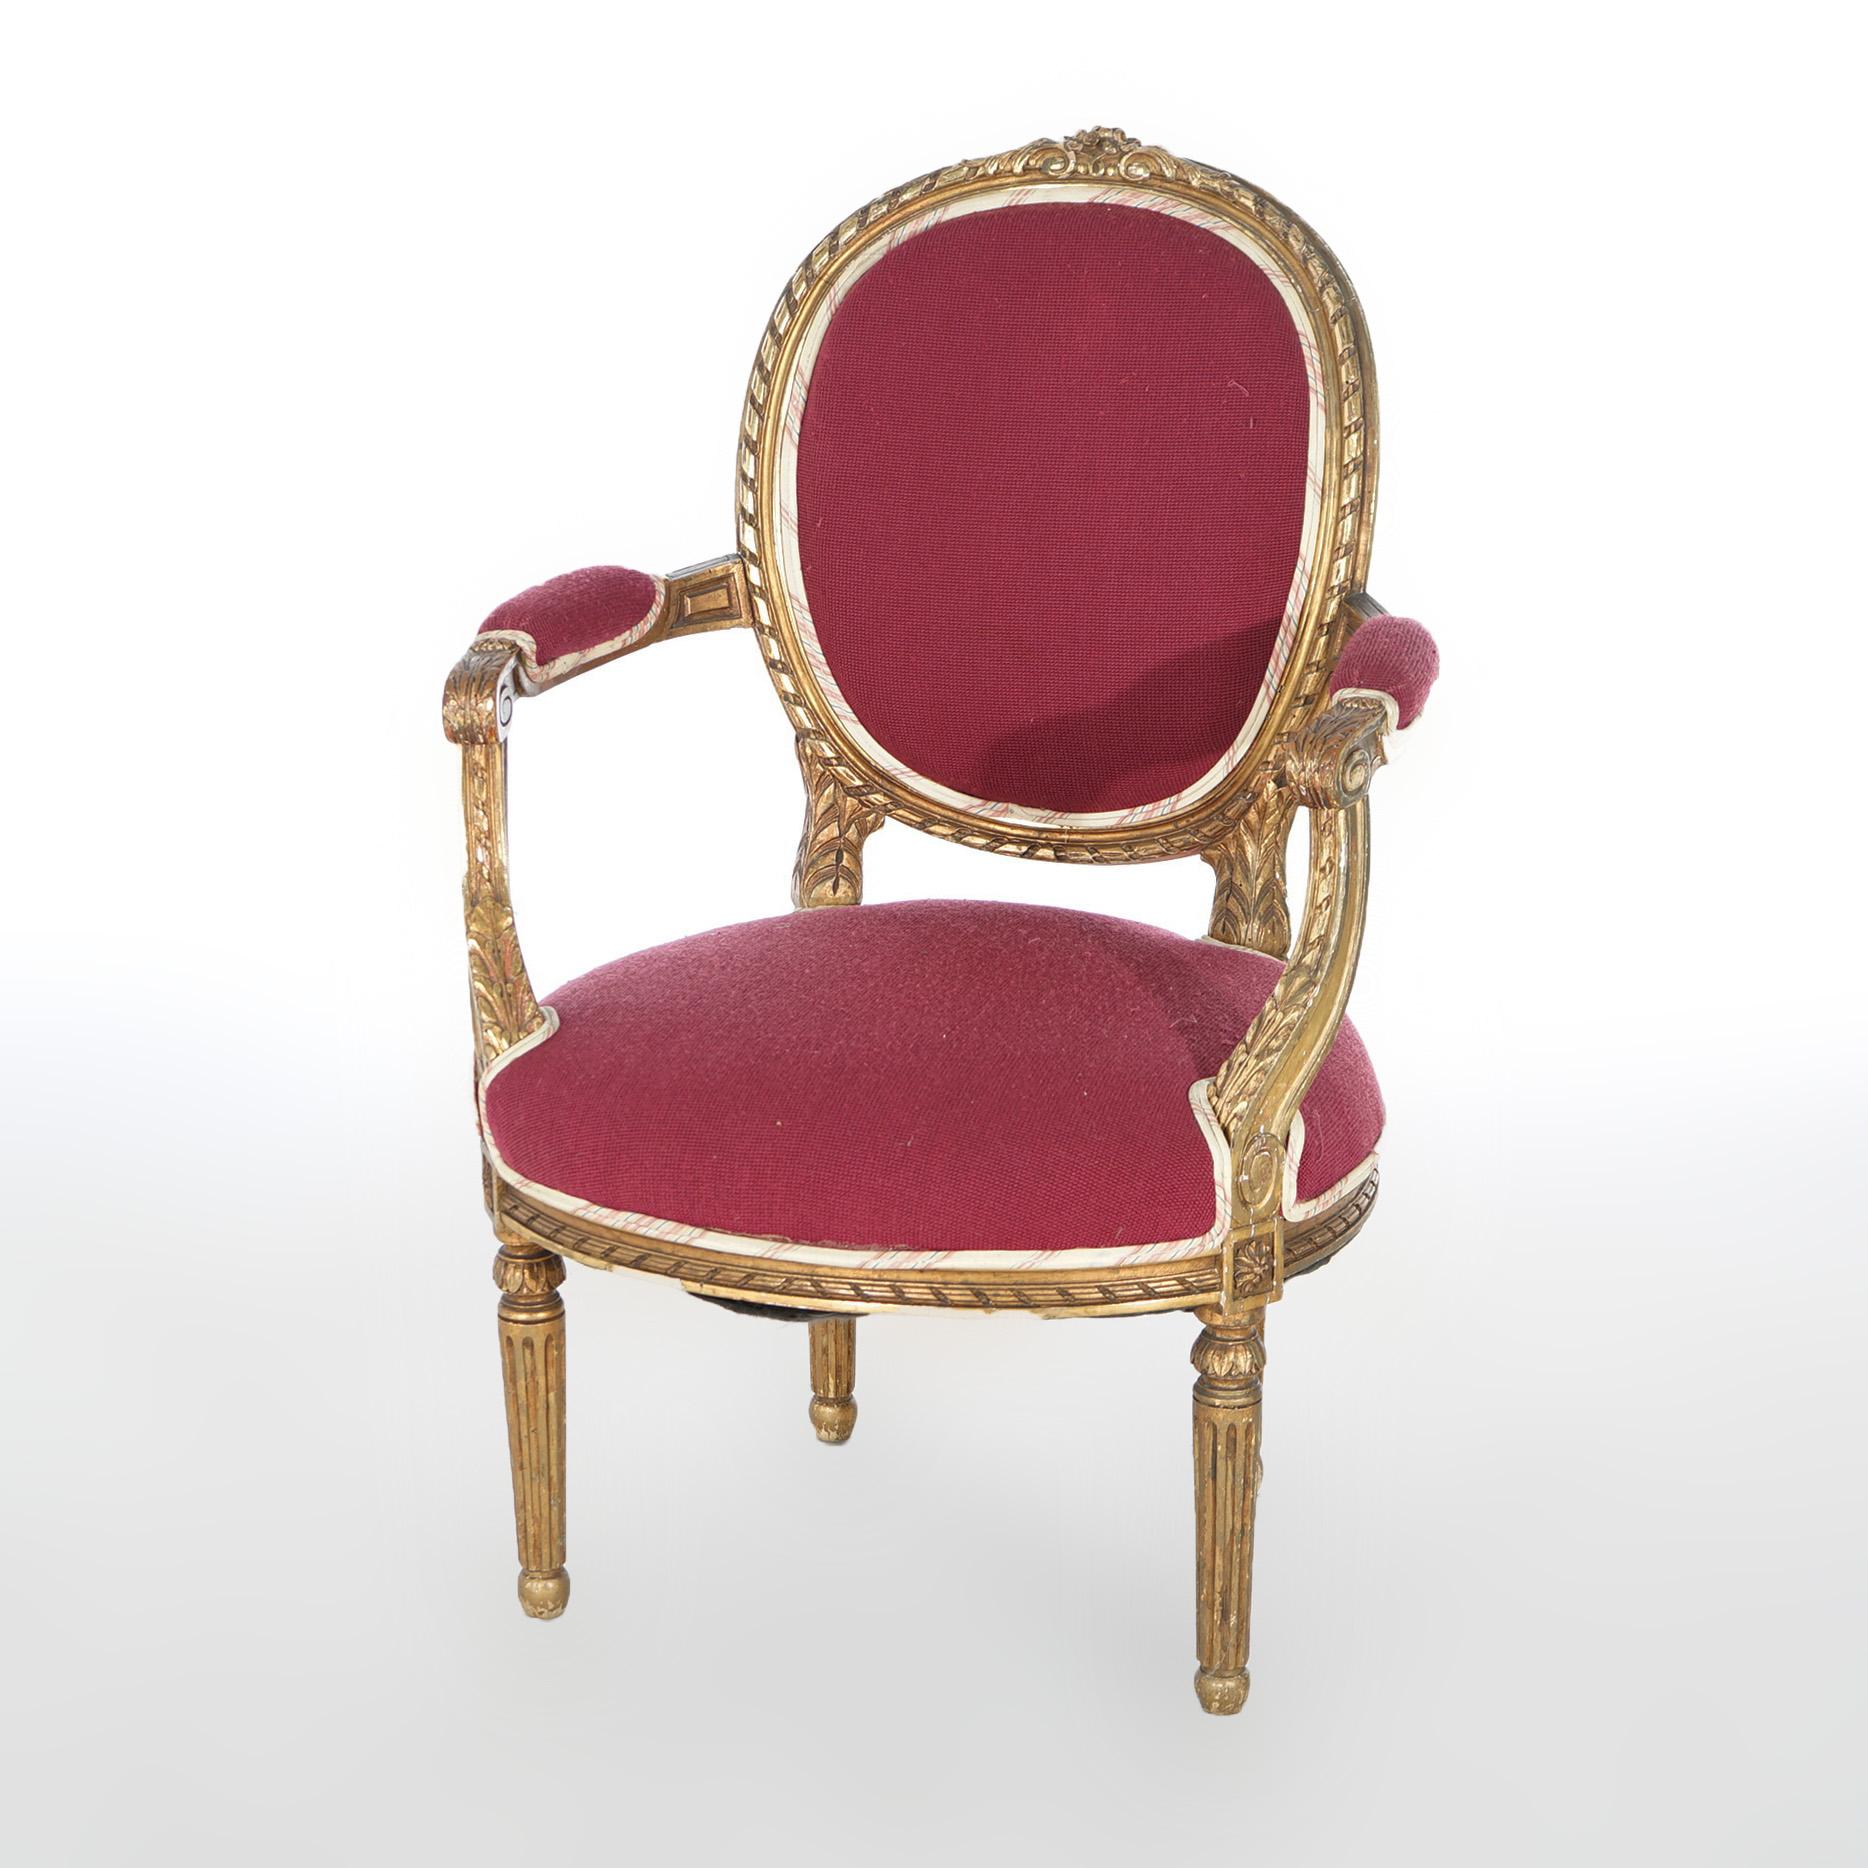 Paire de fauteuils anciens de style Louis XVI, en bois doré, avec assise et dossier rembourrés, accoudoirs couverts en forme de volutes, reposant sur des pieds fuselés cannelés, vers 1920

Mesures - 37.75''H x 25.75''W x 24''D ; SH 17